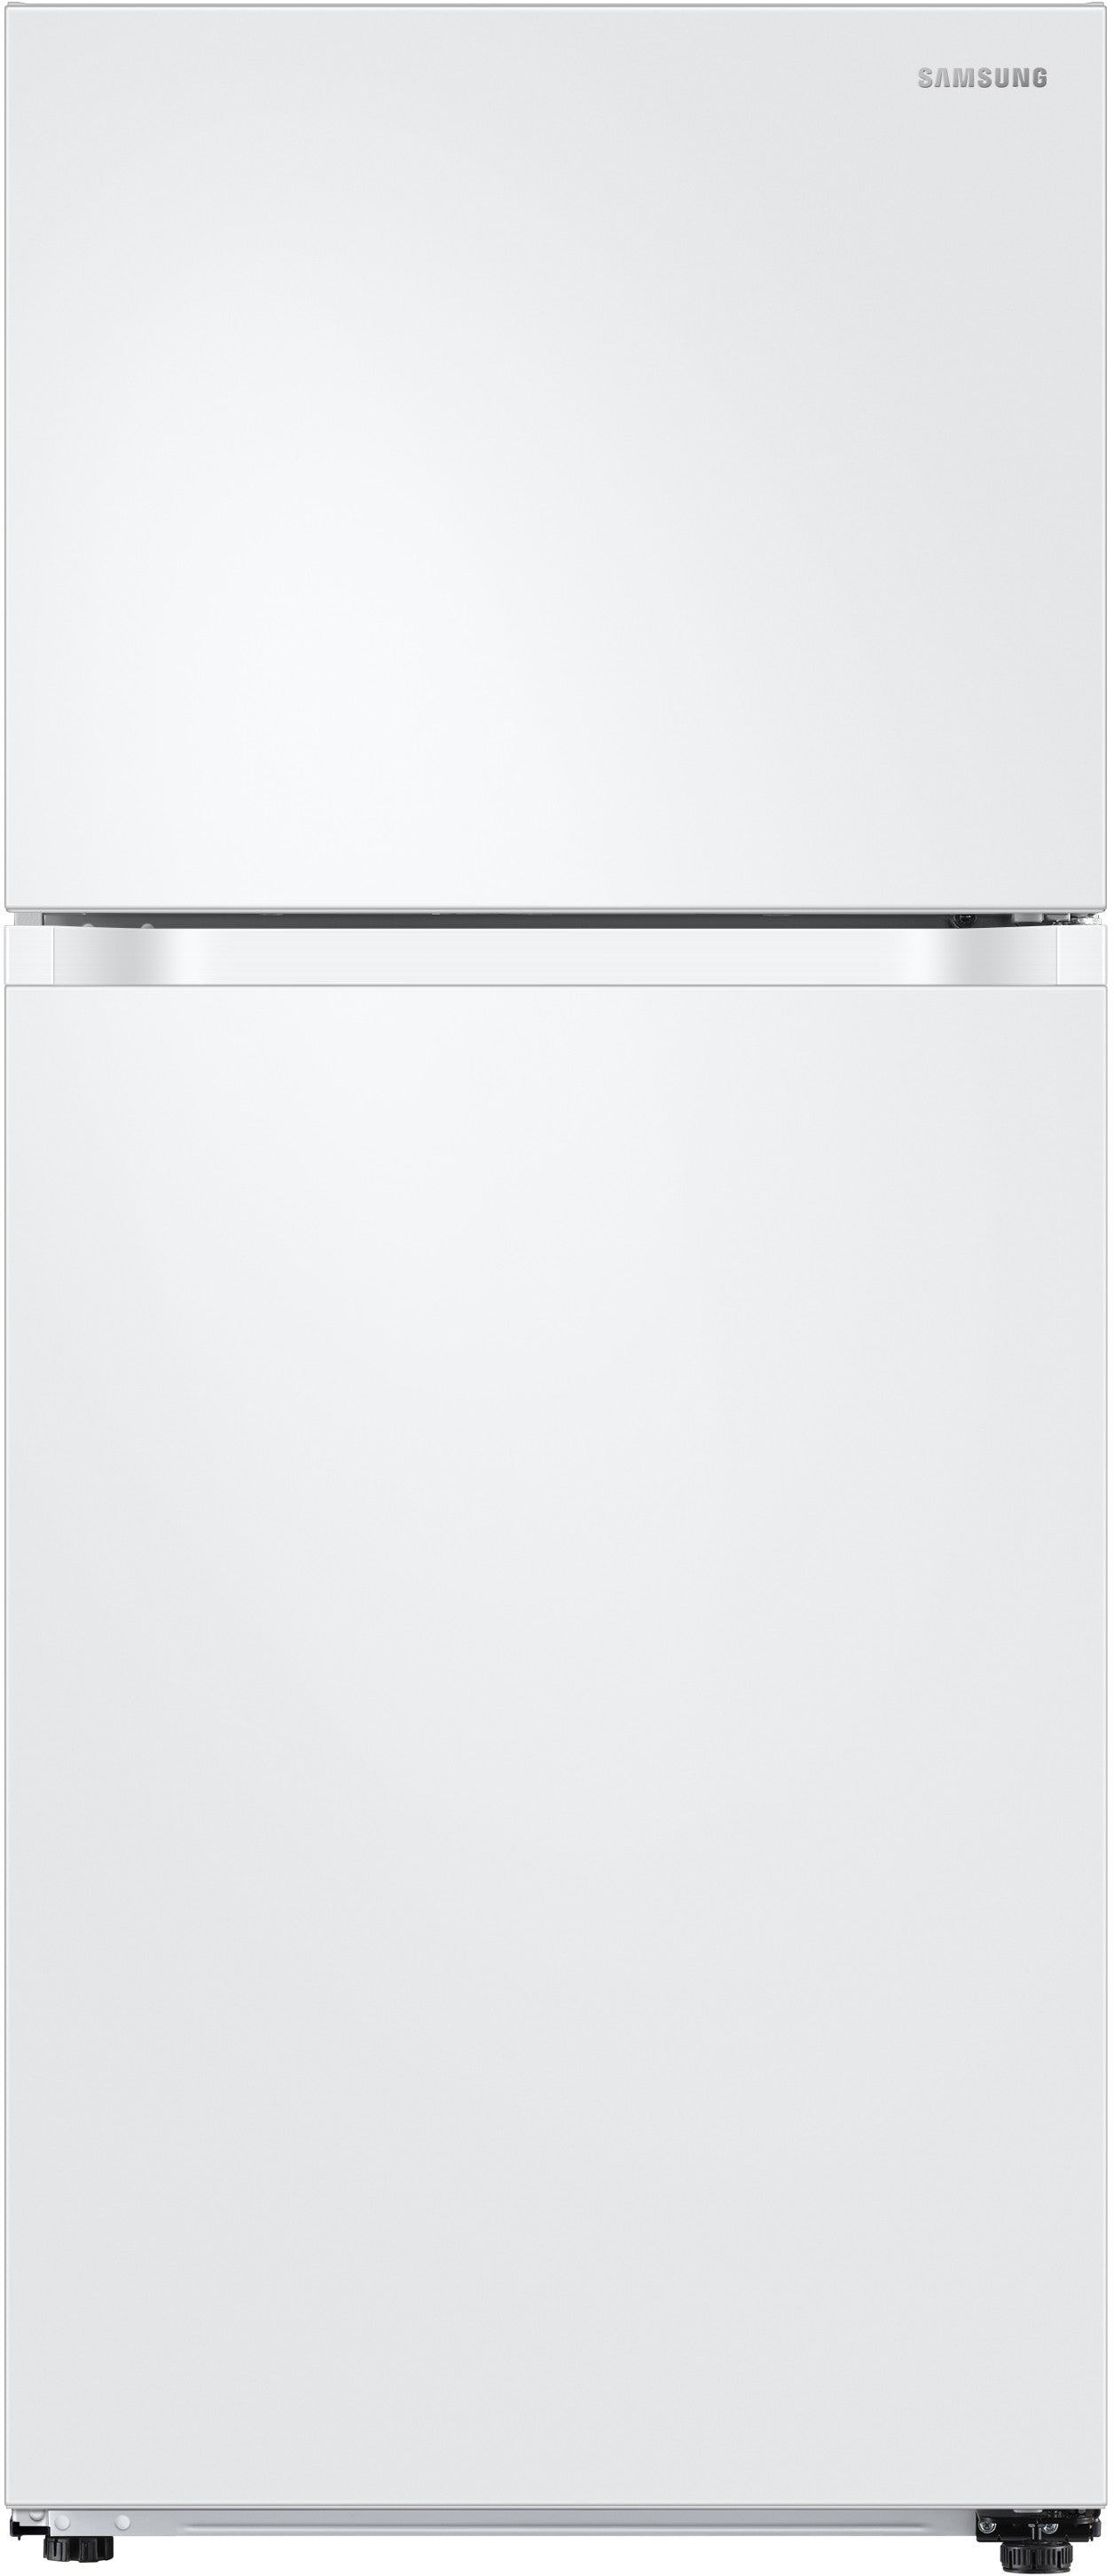 Samsung RT18M6215WW/AA 17.6 Cu. Ft. Top-freezer Refrigerator - Samsung Parts USA